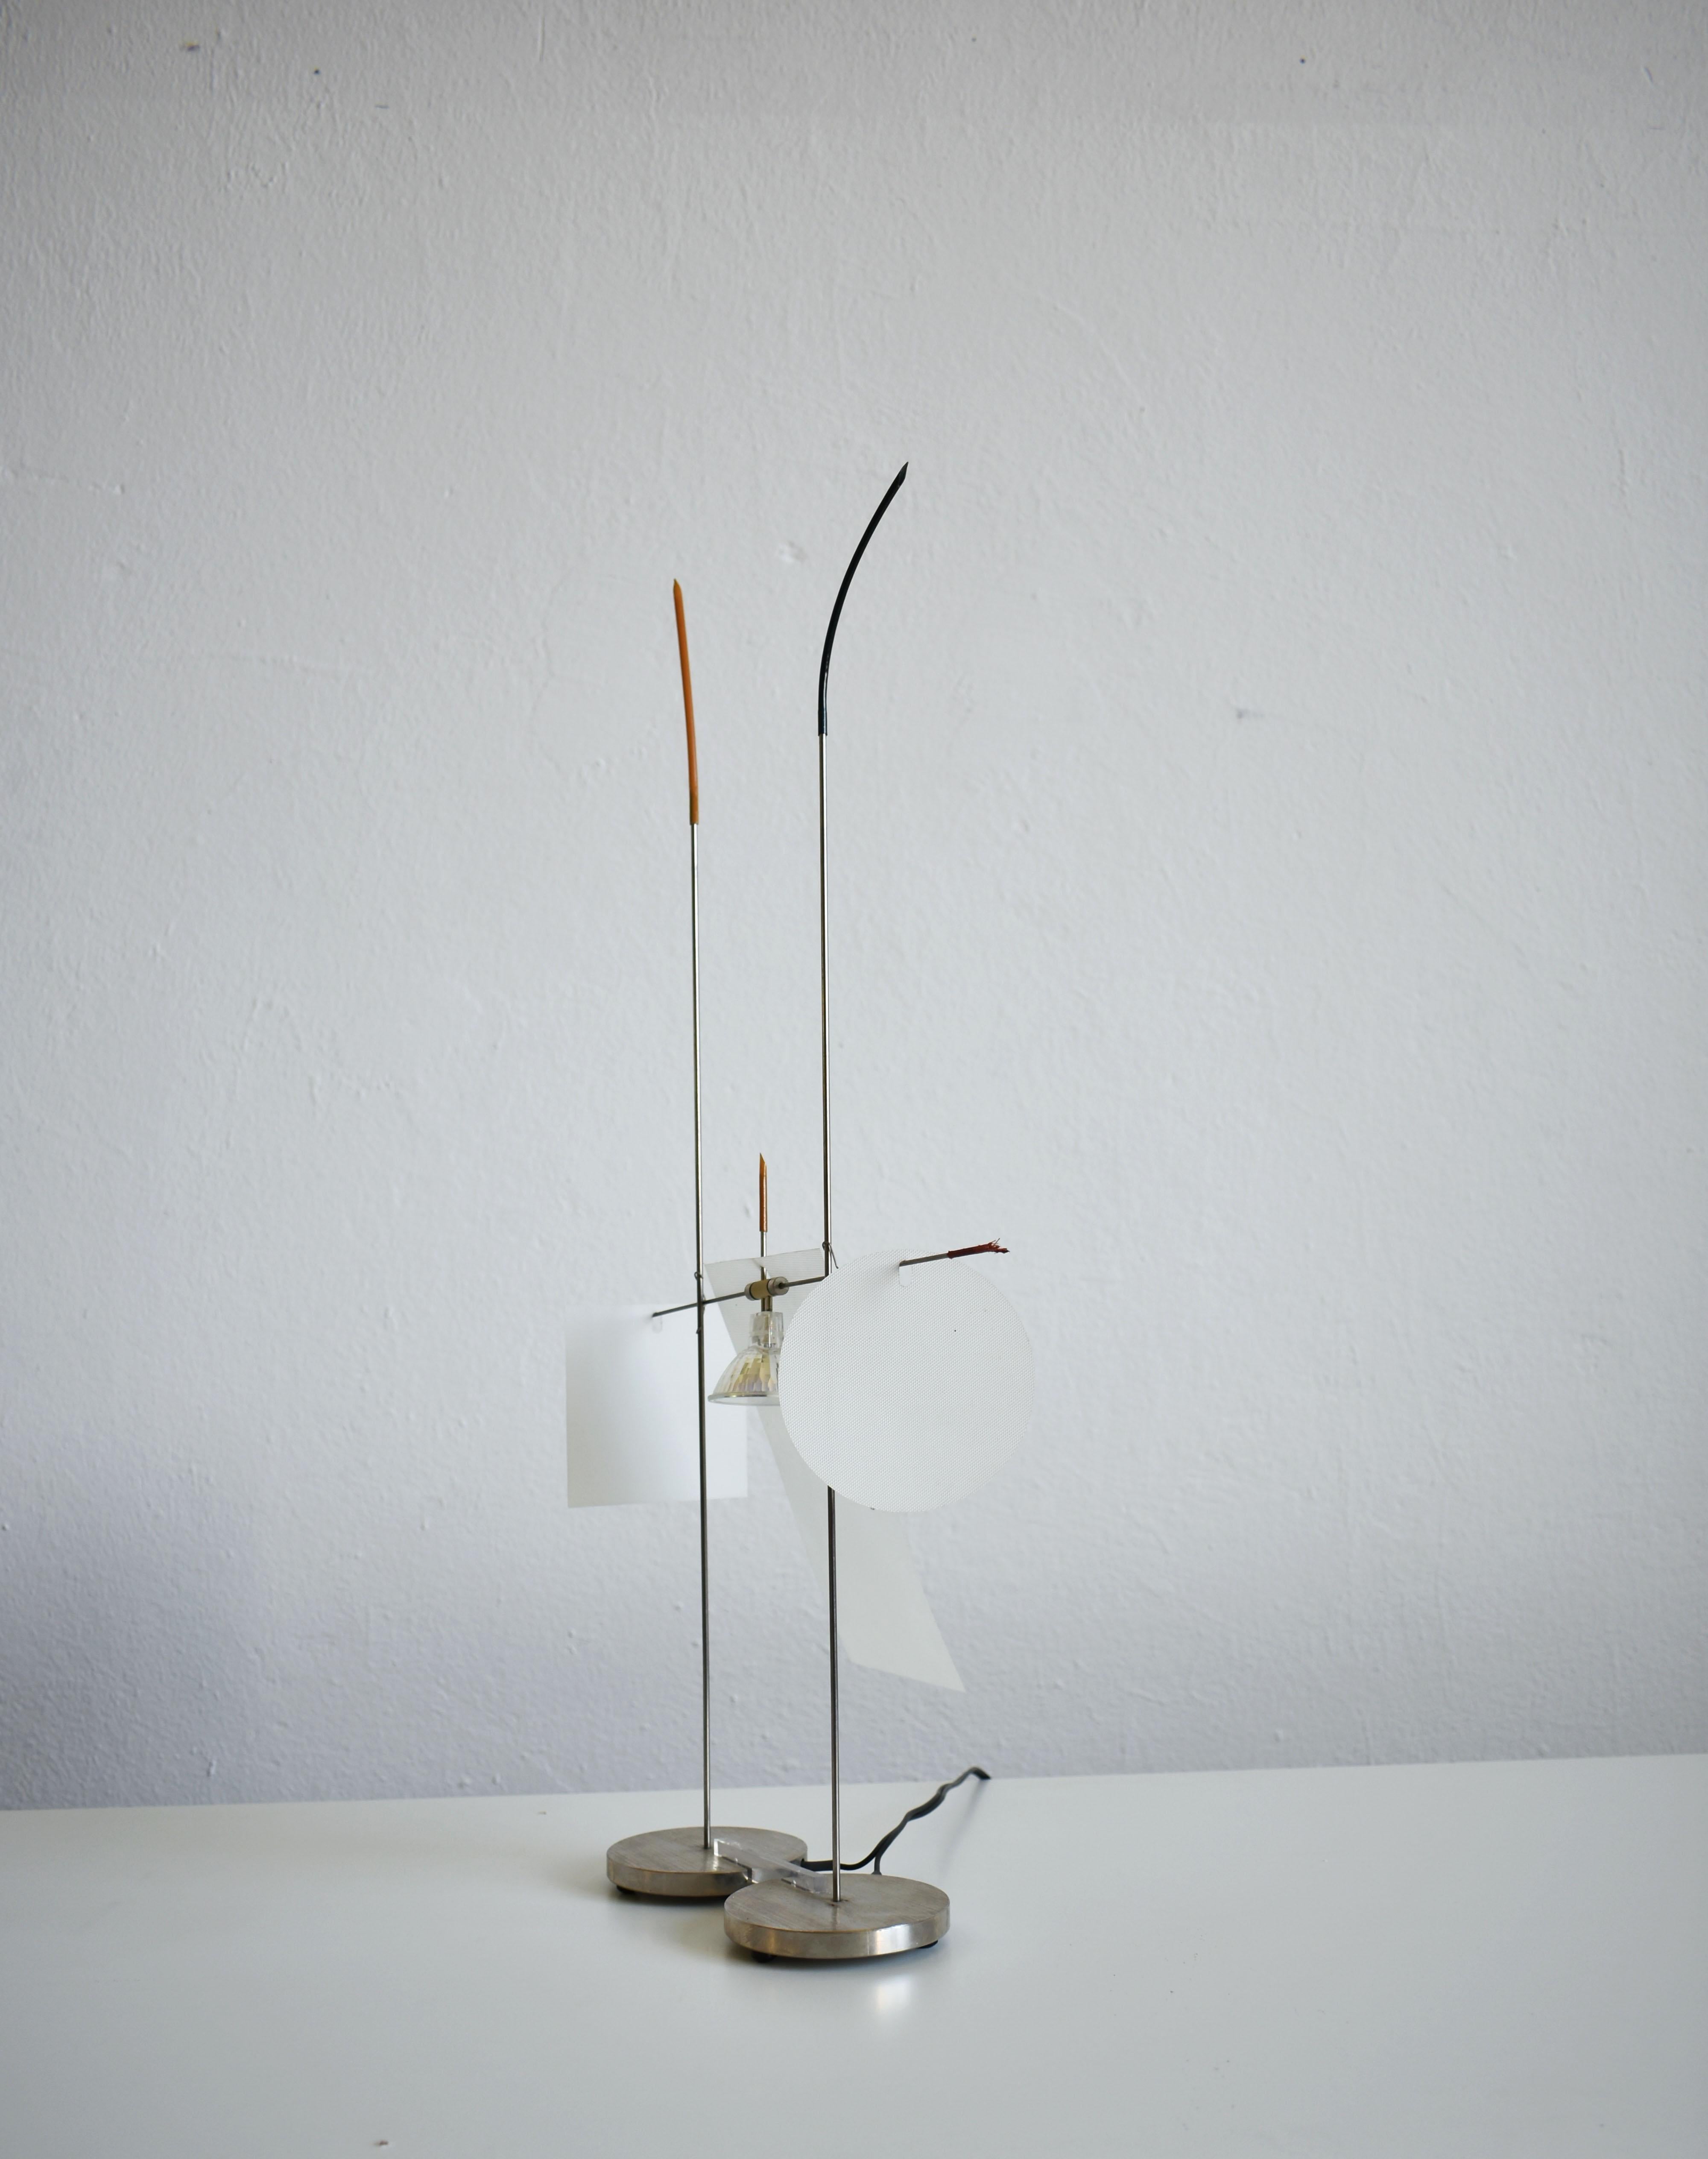 Minimalist 'Fukushu' Table Lamp, Ingo Maurer for Design M, Germany, 1986